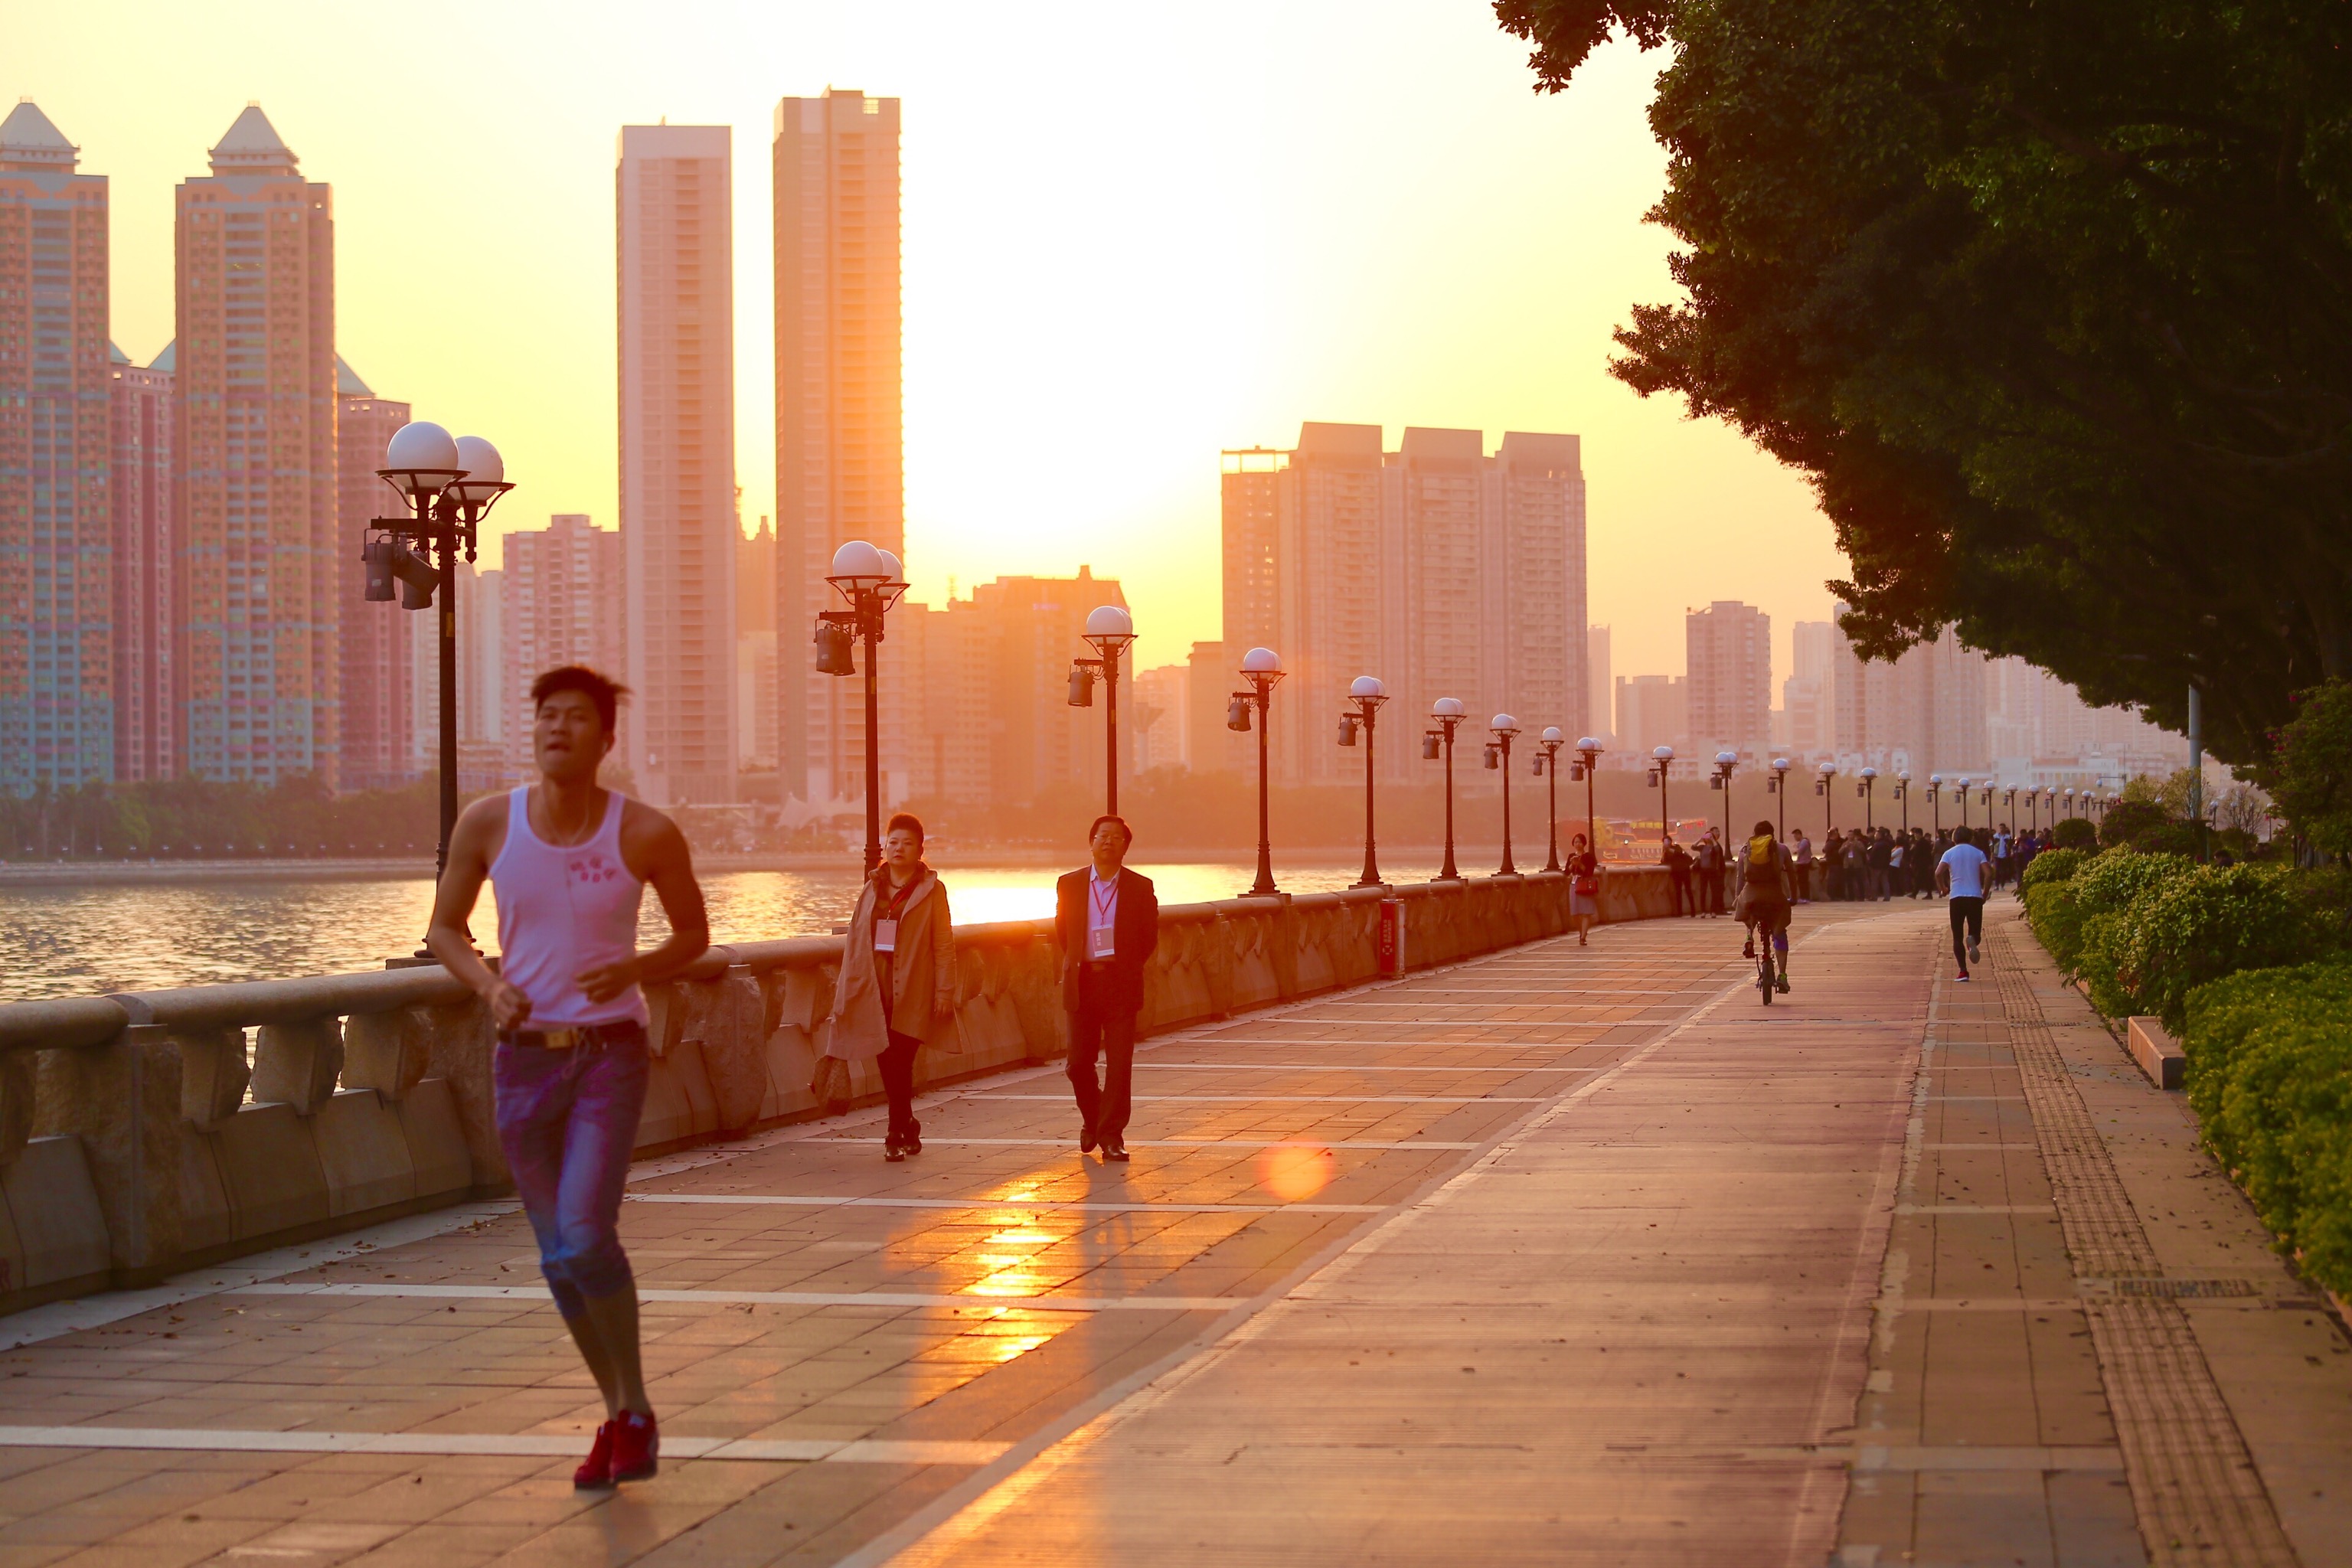 夏季夜跑 | 正确的跑步姿势 - 每日推荐 - iLOHAS乐活社区